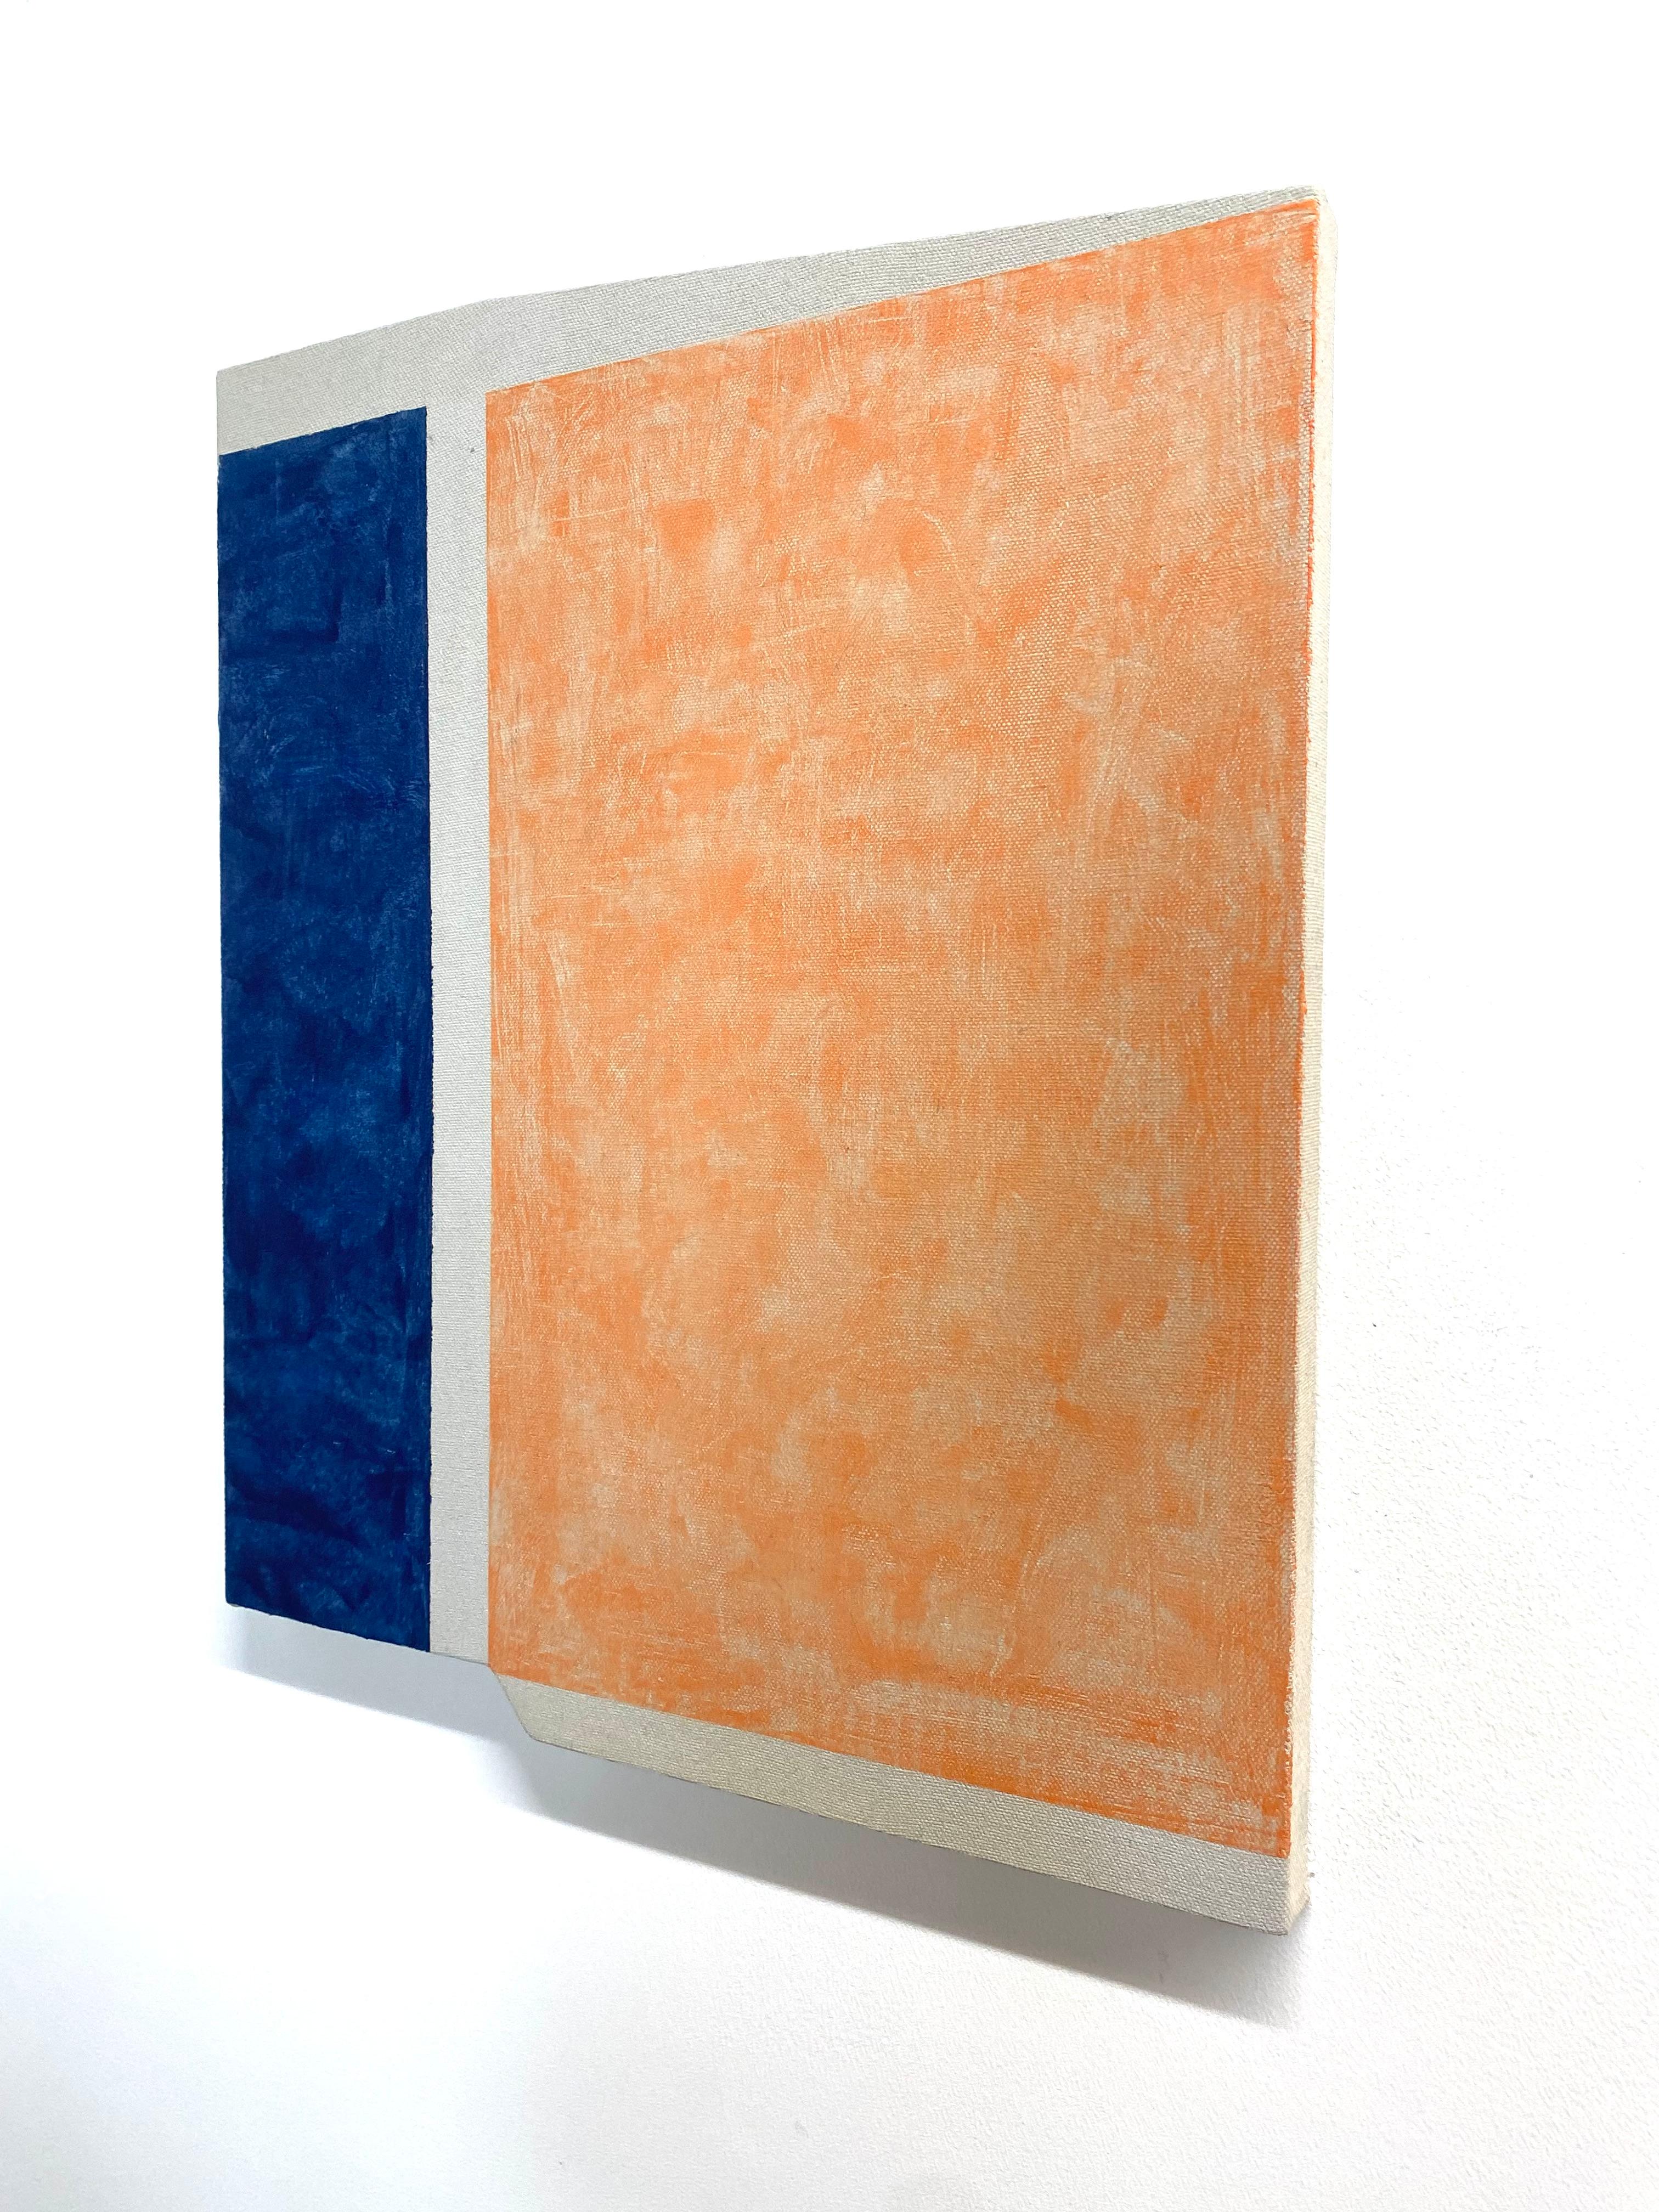 Deux blocs verticaux de couleur dans un bleu lapis foncé et un orange doux et tacheté sont lumineux sur des sections neutres plus fines de lin exposé dans cette peinture sur un panneau façonné. Signé, daté et titré au verso.

Le travail d'Elizabeth